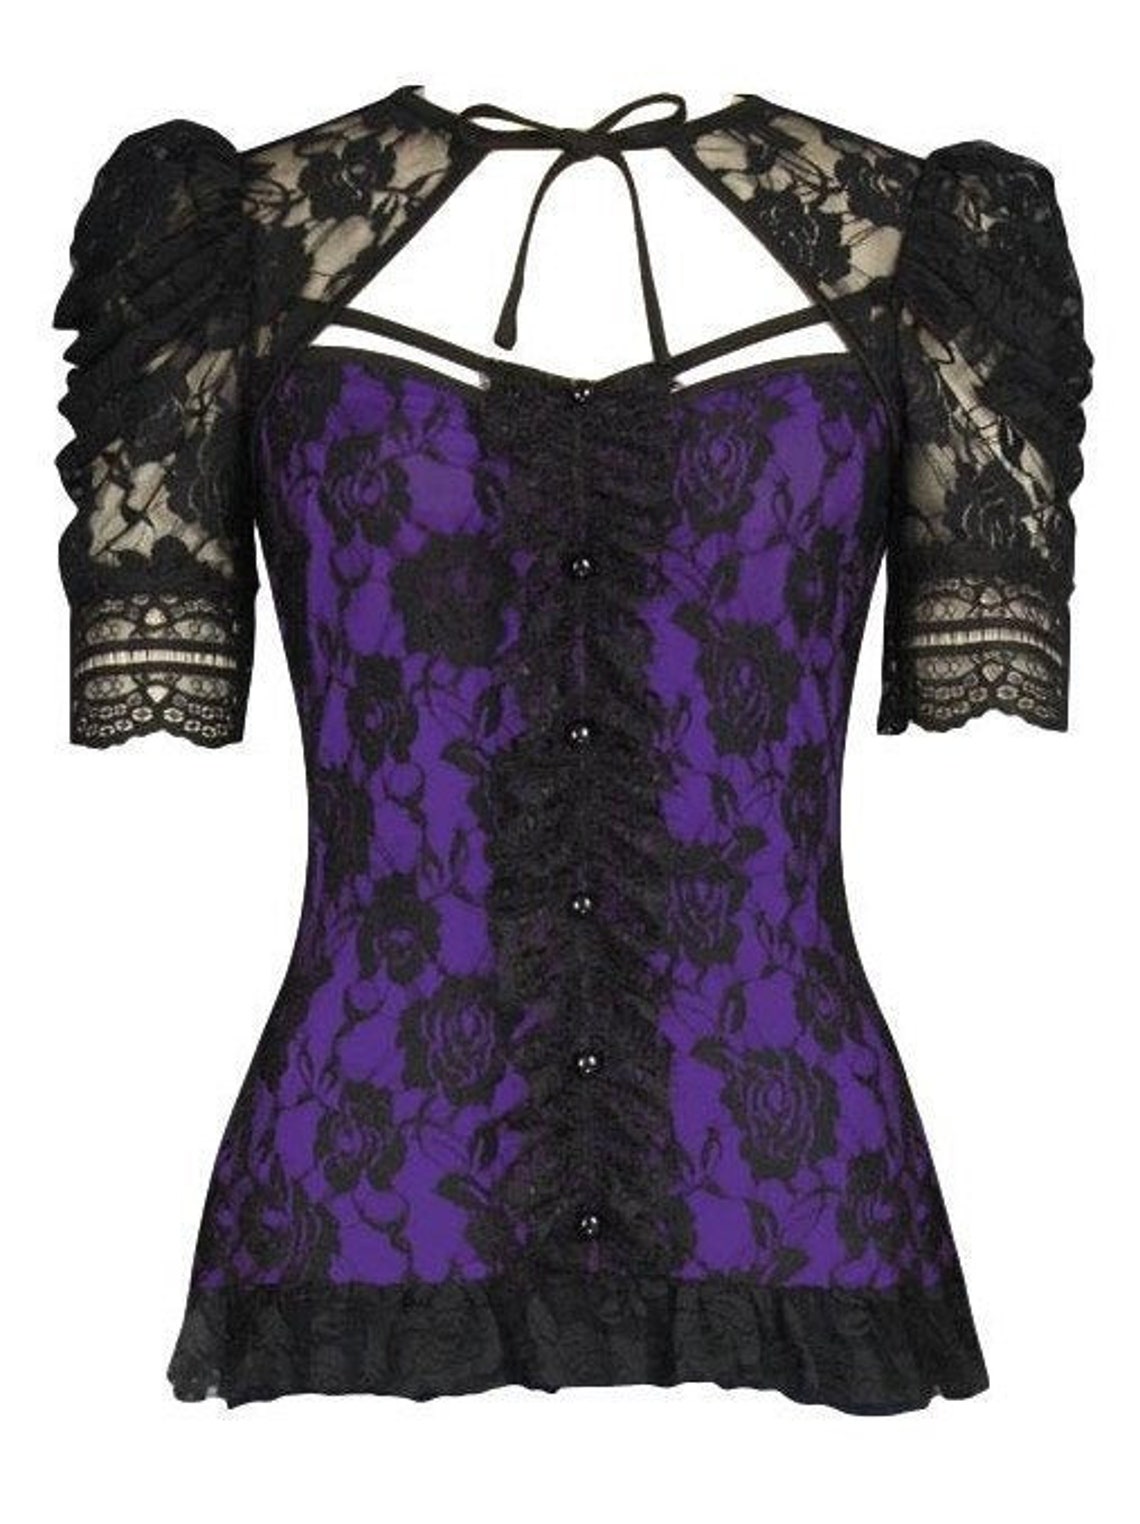 Plus Size Purple Black Lace Victorian Blouse Gothic Steampunk | Etsy